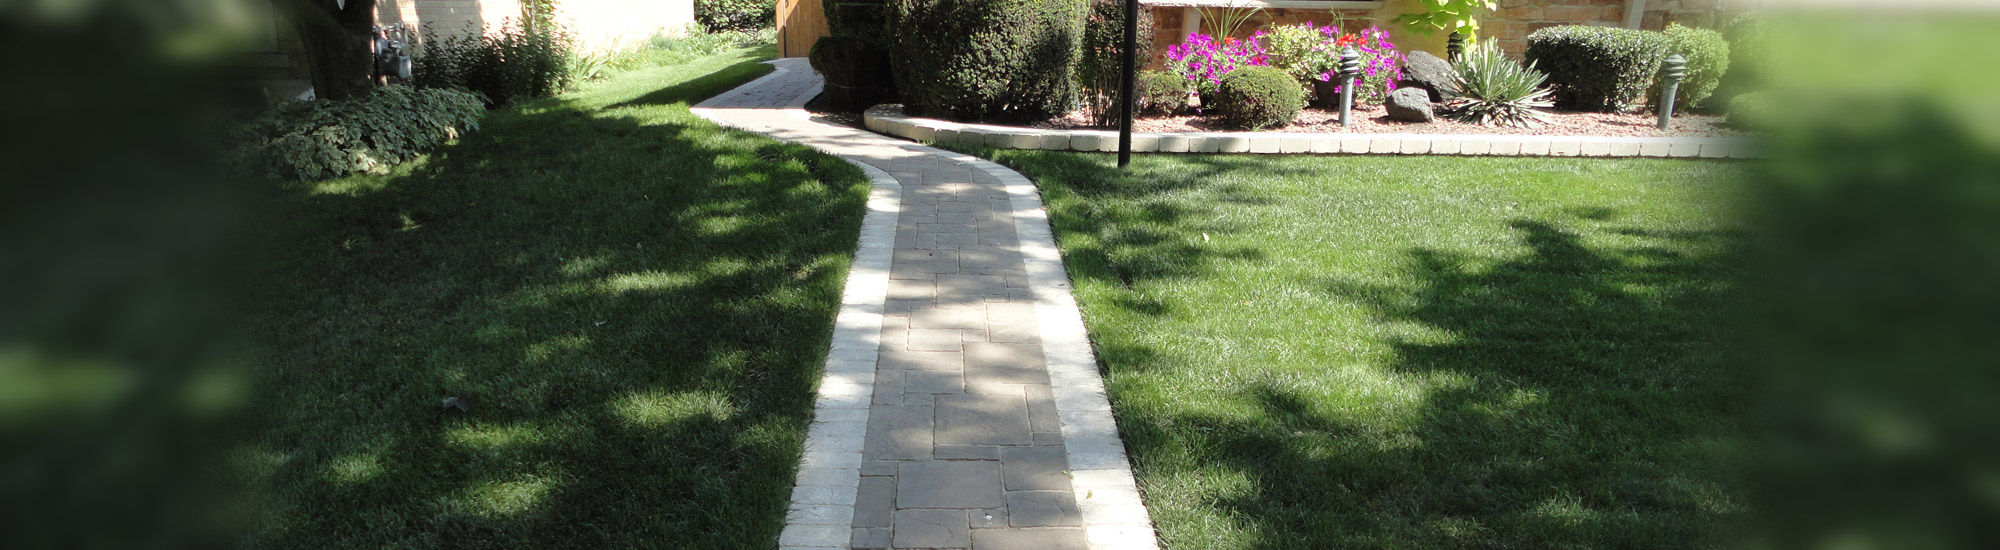 brick paver walkway arlington hts